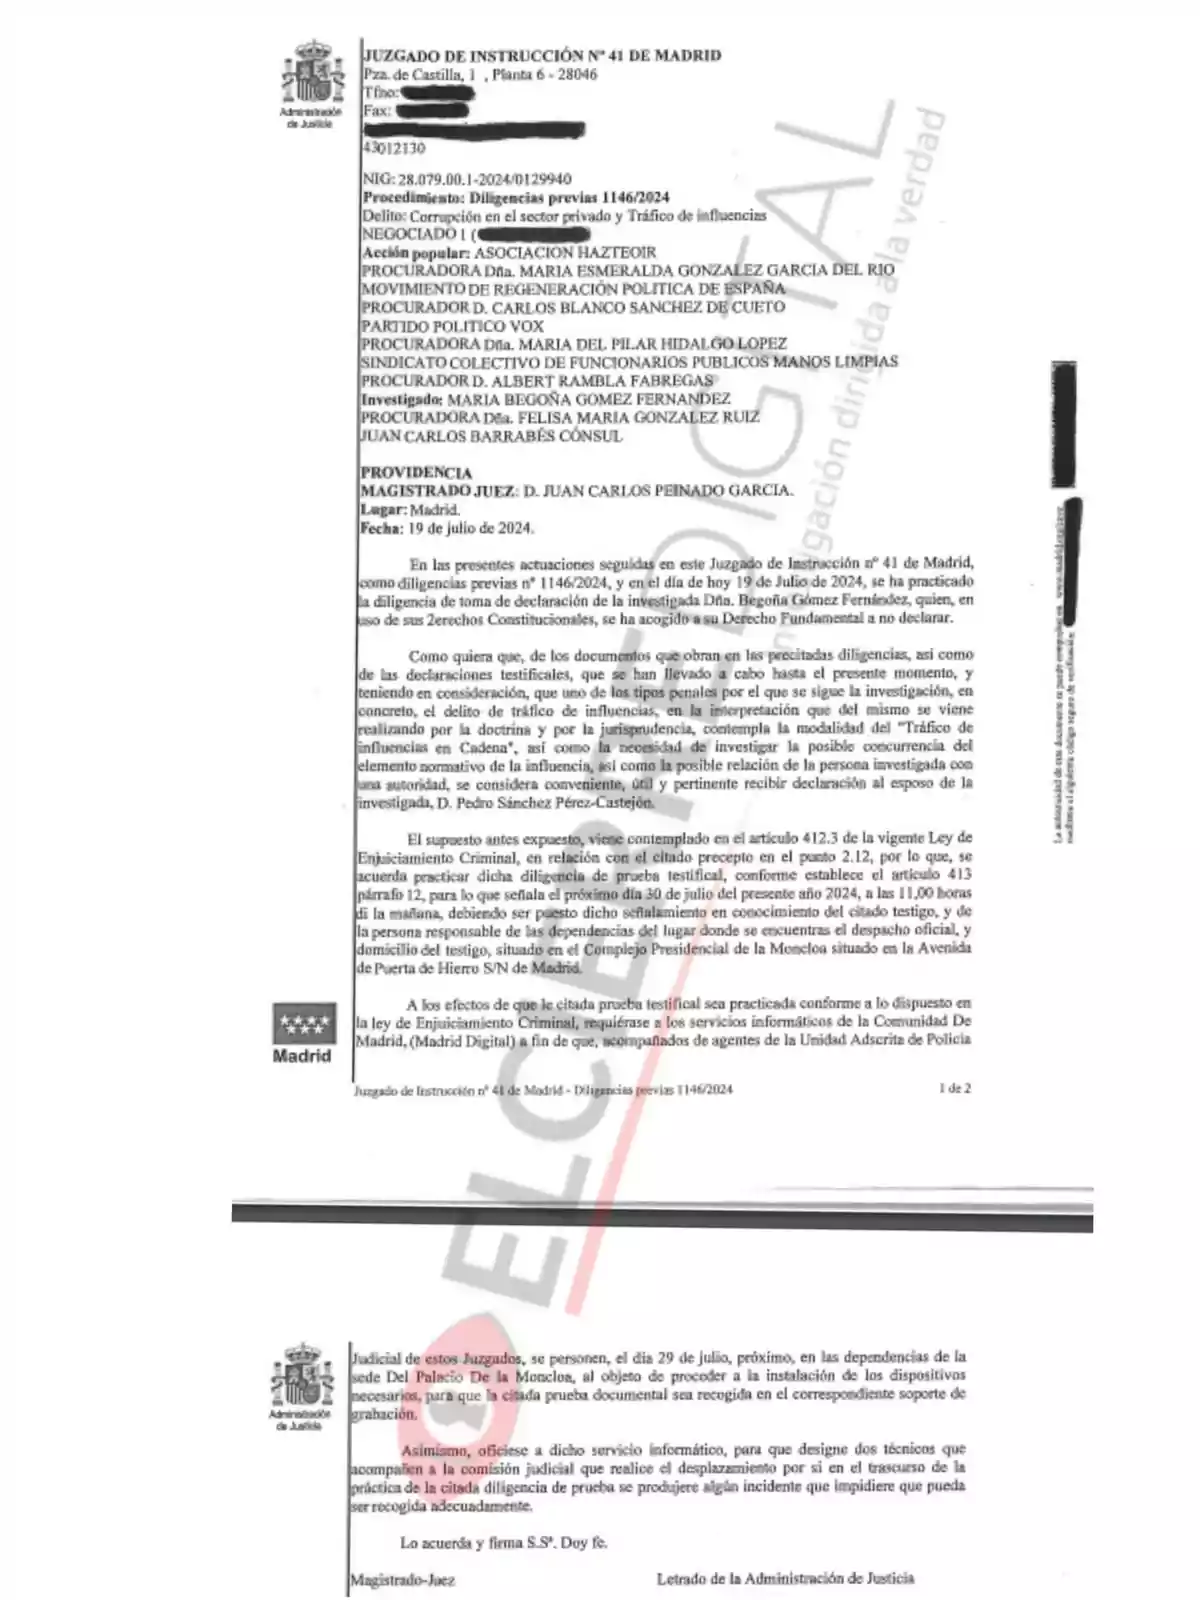 Documento judicial del Juzgado de Instrucción Nº 41 de Madrid, relacionado con un procedimiento de diligencias previas sobre corrupción en el sector privado y tráfico de influencias, fechado el 19 de julio de 2024.